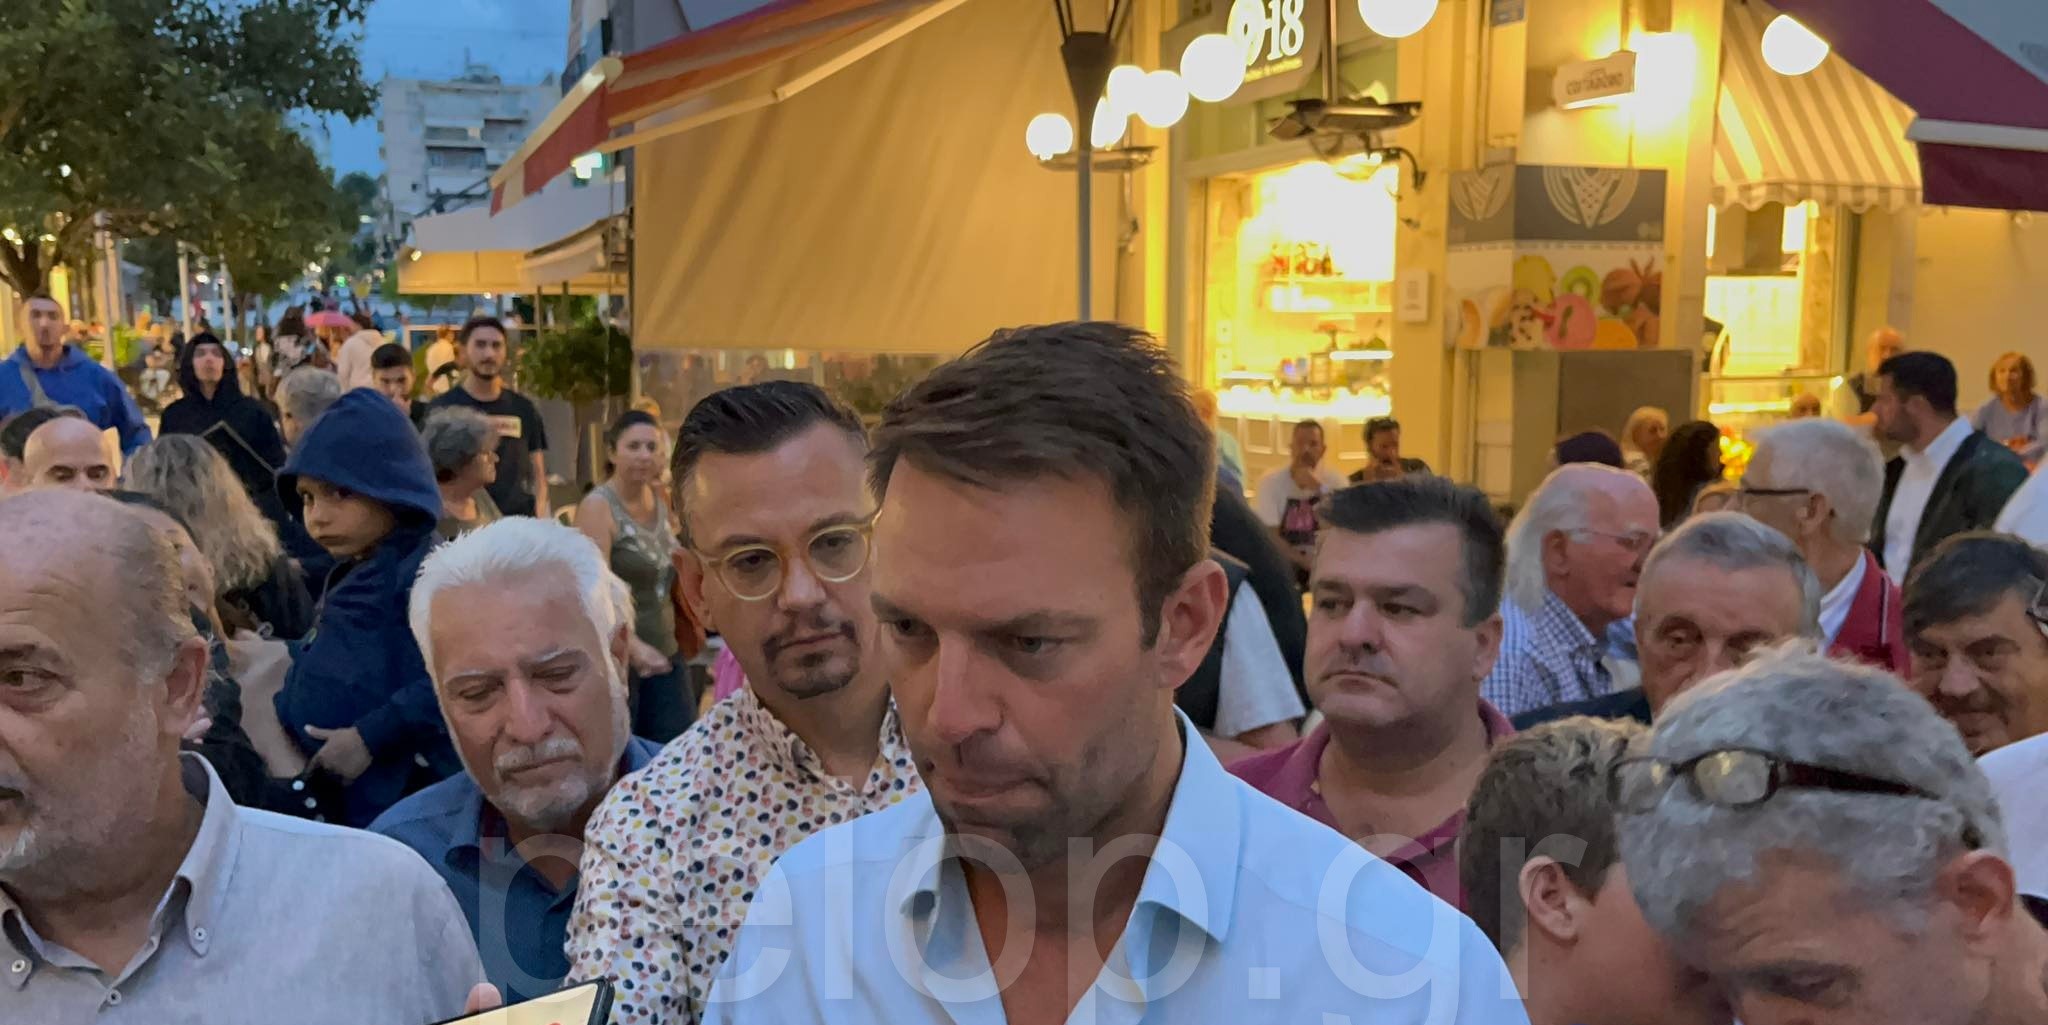 Στέφανος Κασσελάκης στην Πάτρα: «Είμαι εδώ λόγω του Αλέξη και λόγω της κοινωνίας» - «Θέλουμε επανίδρυση του κόμματος» ΦΩΤΟ - ΒΙΝΤΕΟ